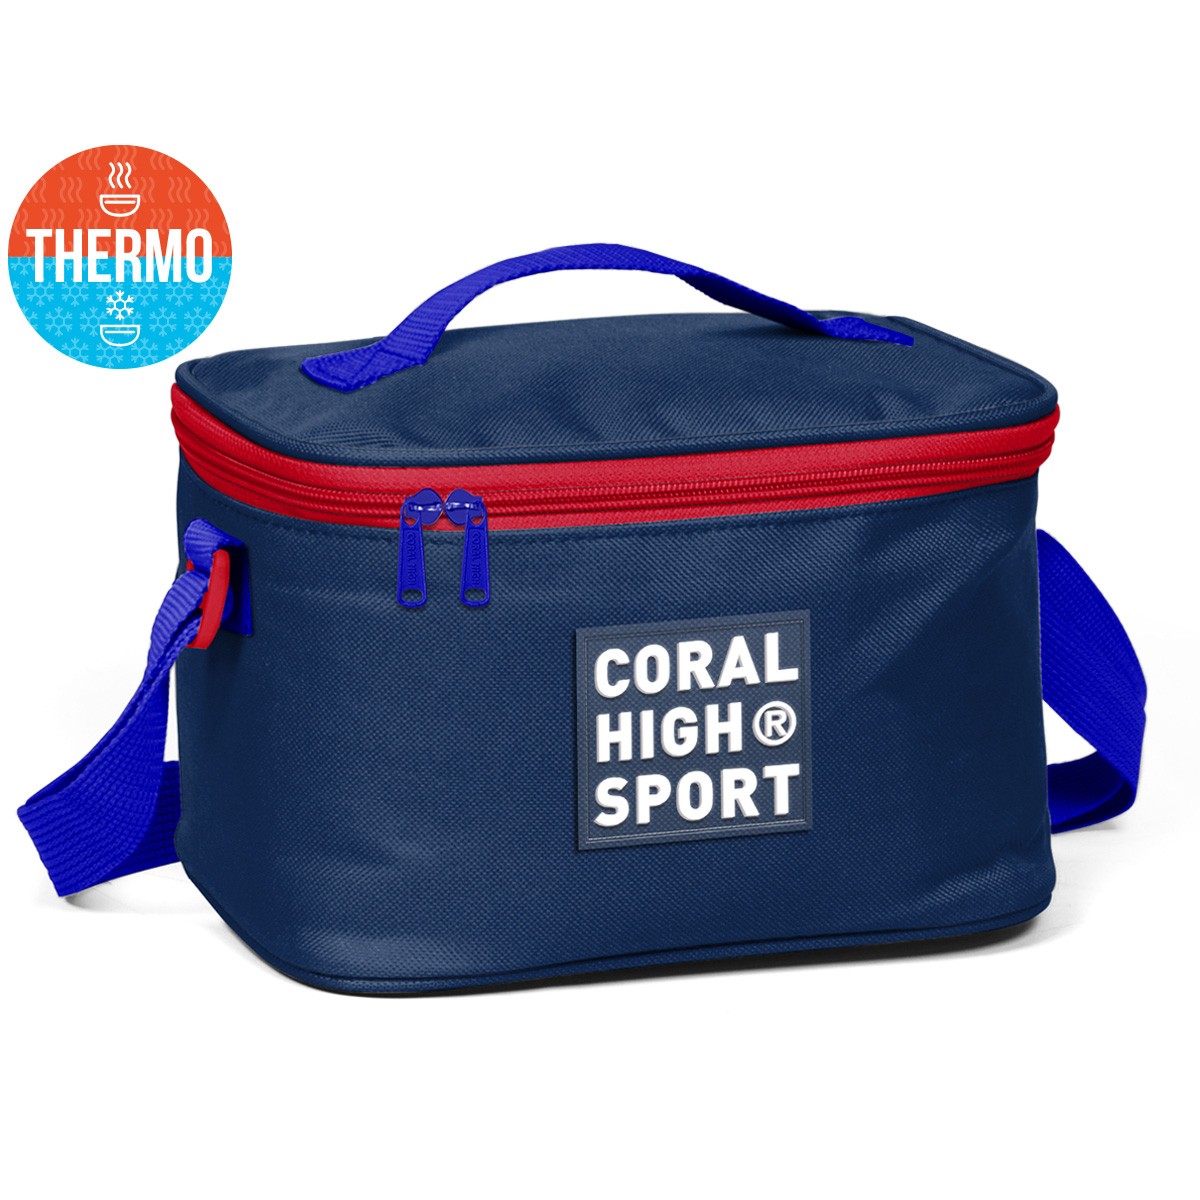 Coral High Sport Lacivert Kırmızı Thermo Beslenme Çantası 22815